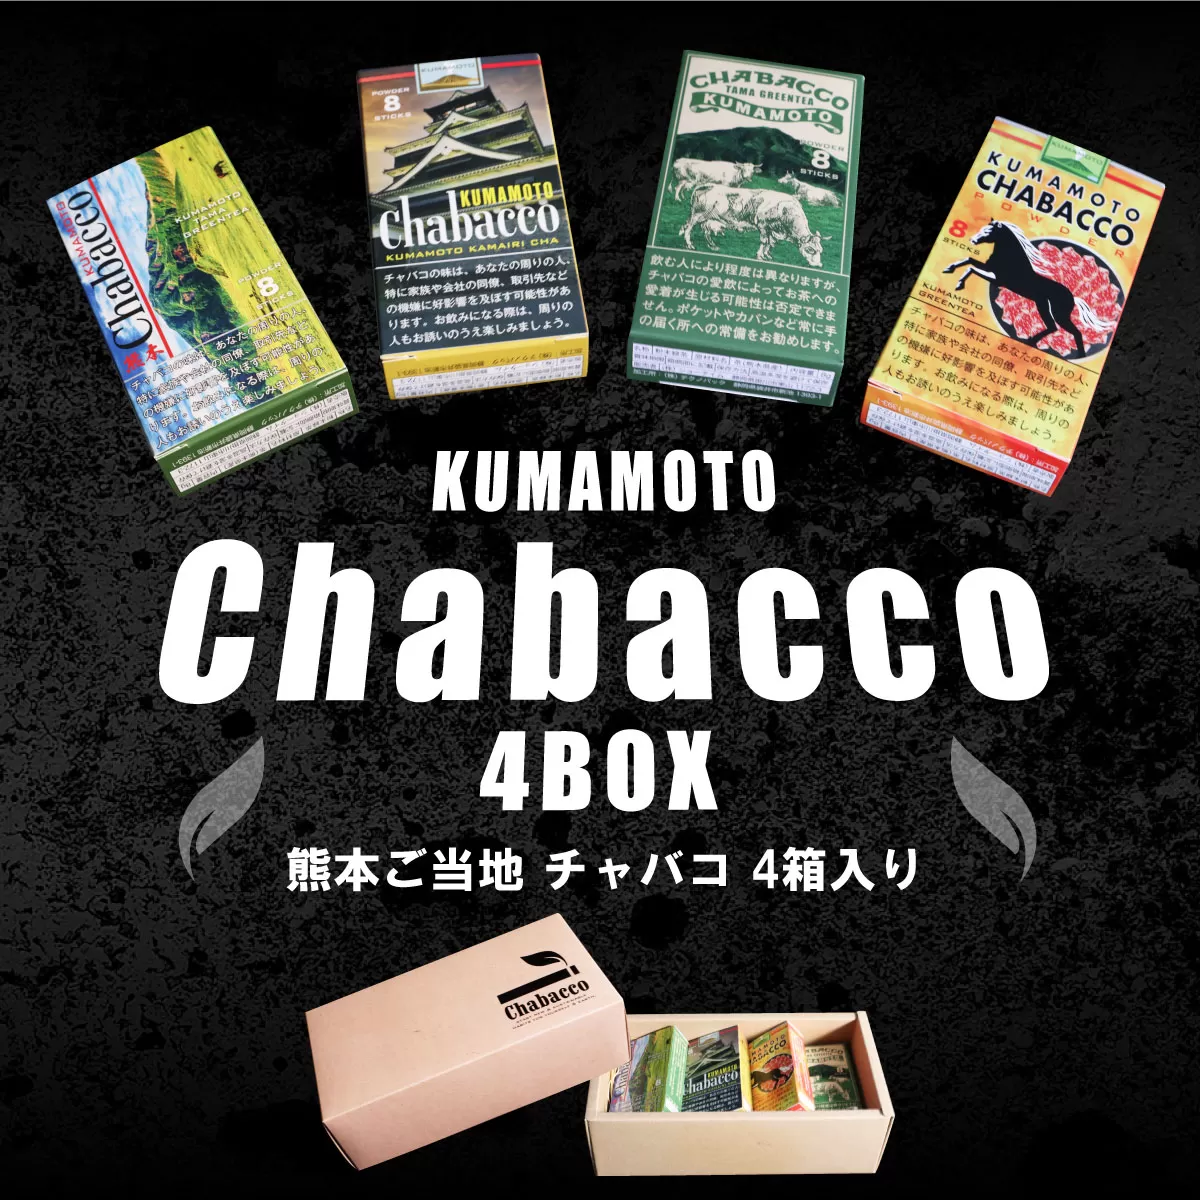 熊本ご当地 ちゃばこ チャバコ Chabacco 4箱入り AW01